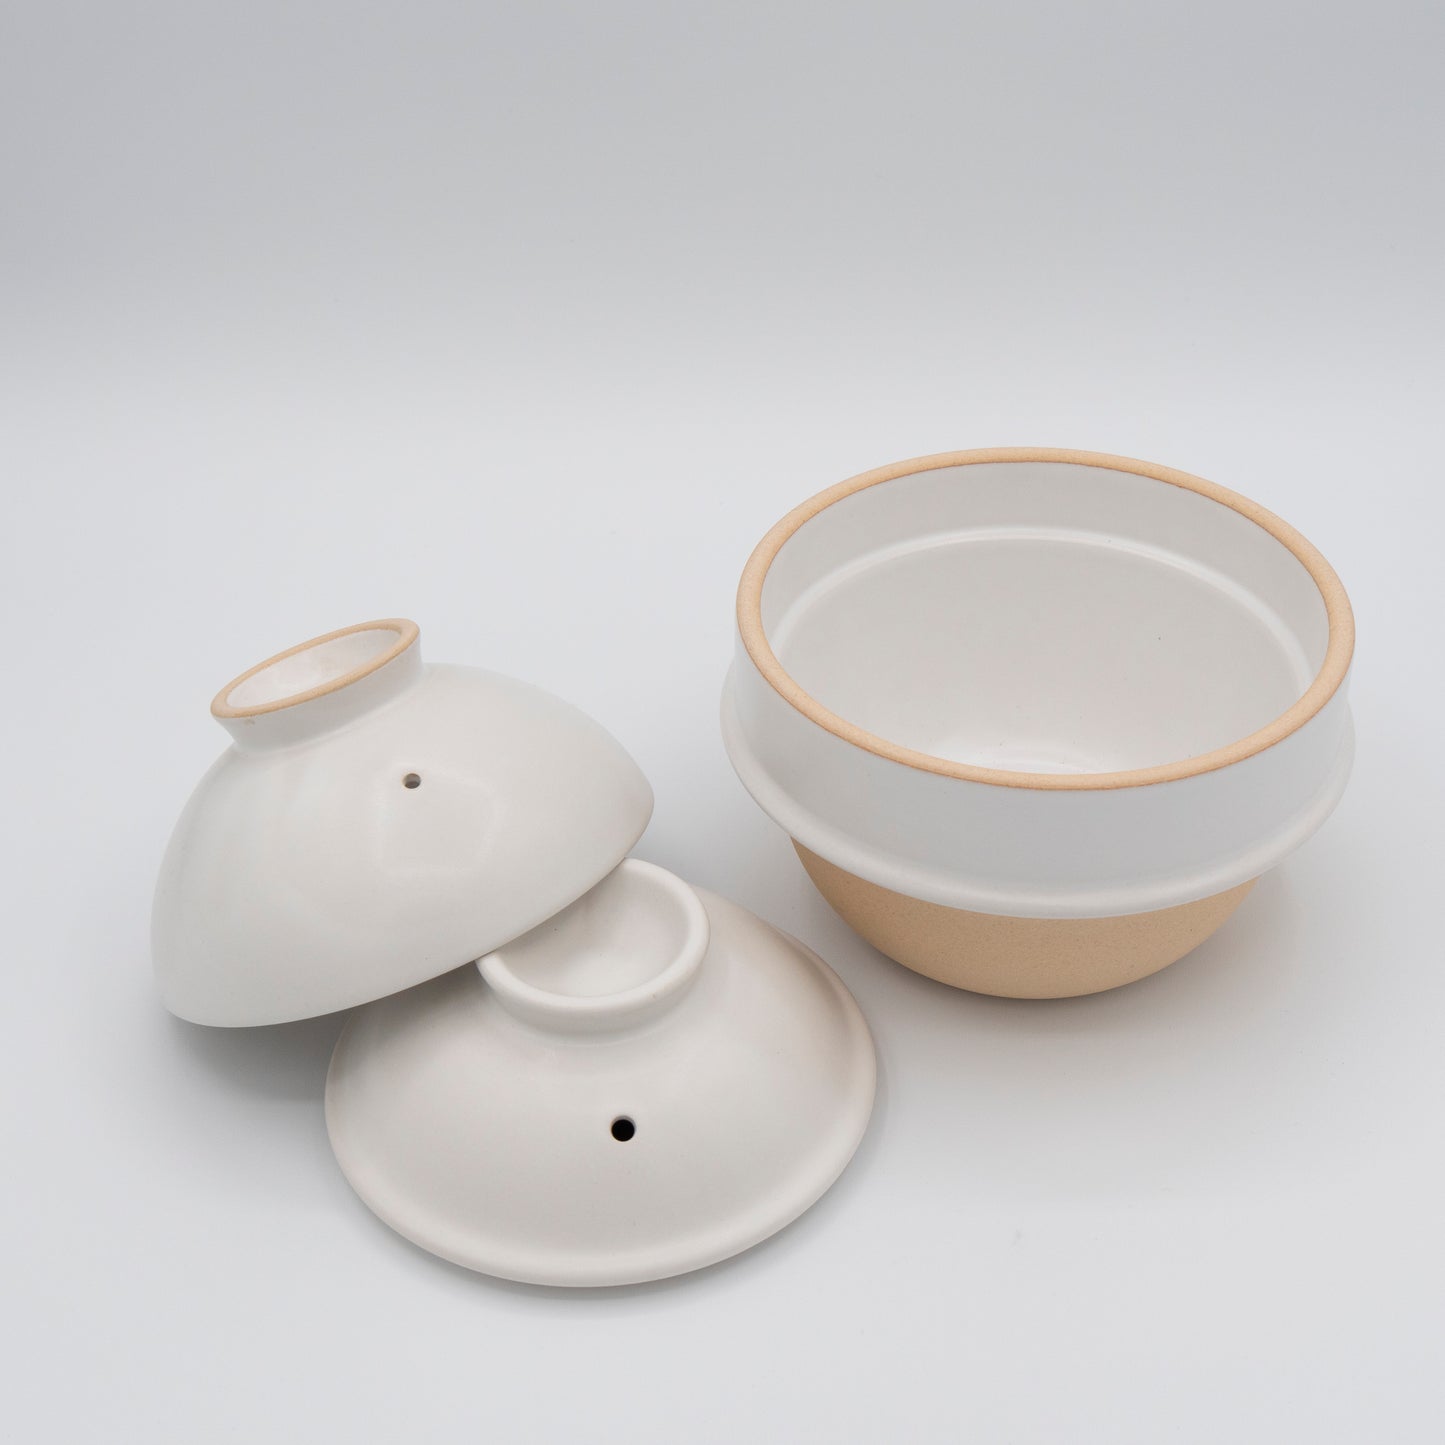 Tsukamoto Pottery Kamacco - Rice Cooker